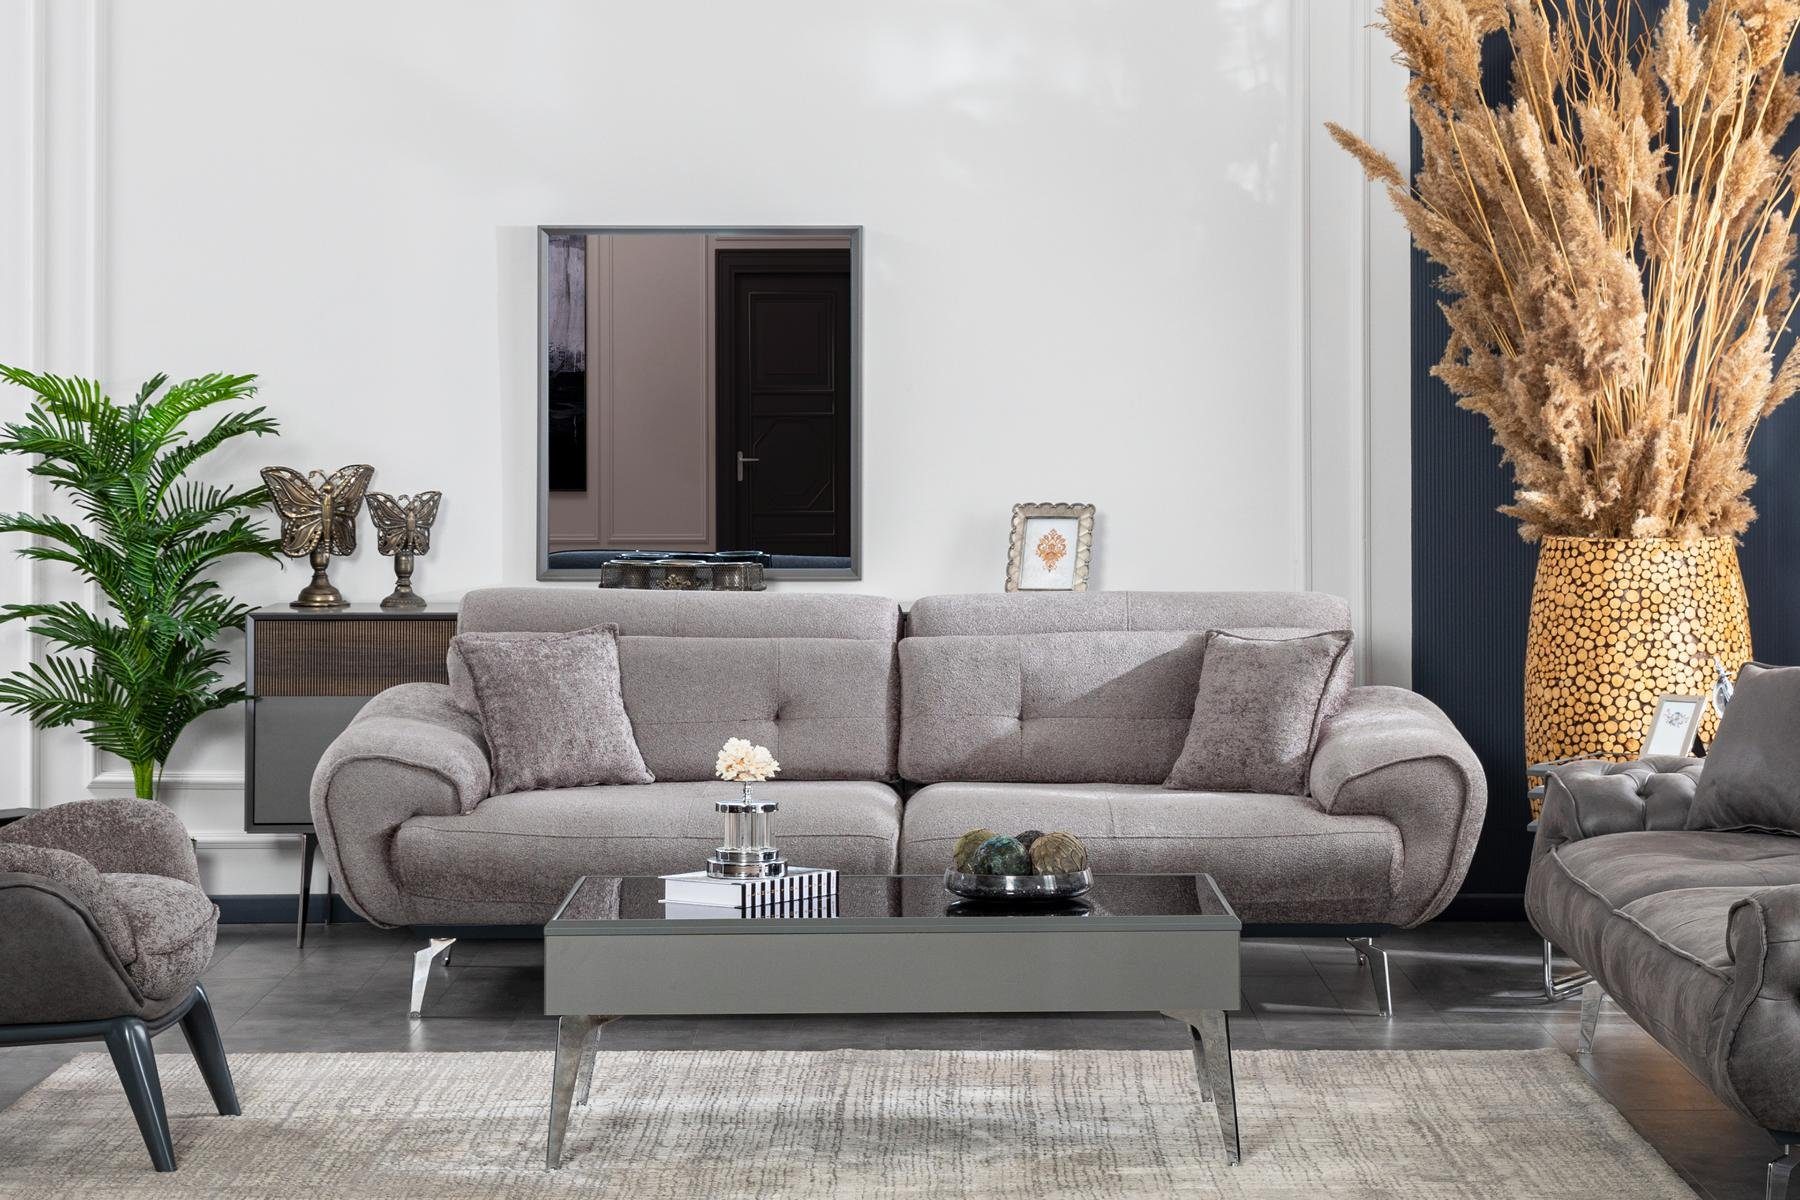 JVmoebel Sofa Italienische Stil Wohnzimmer Luxus Sofa Design, Made in Europe | Alle Sofas